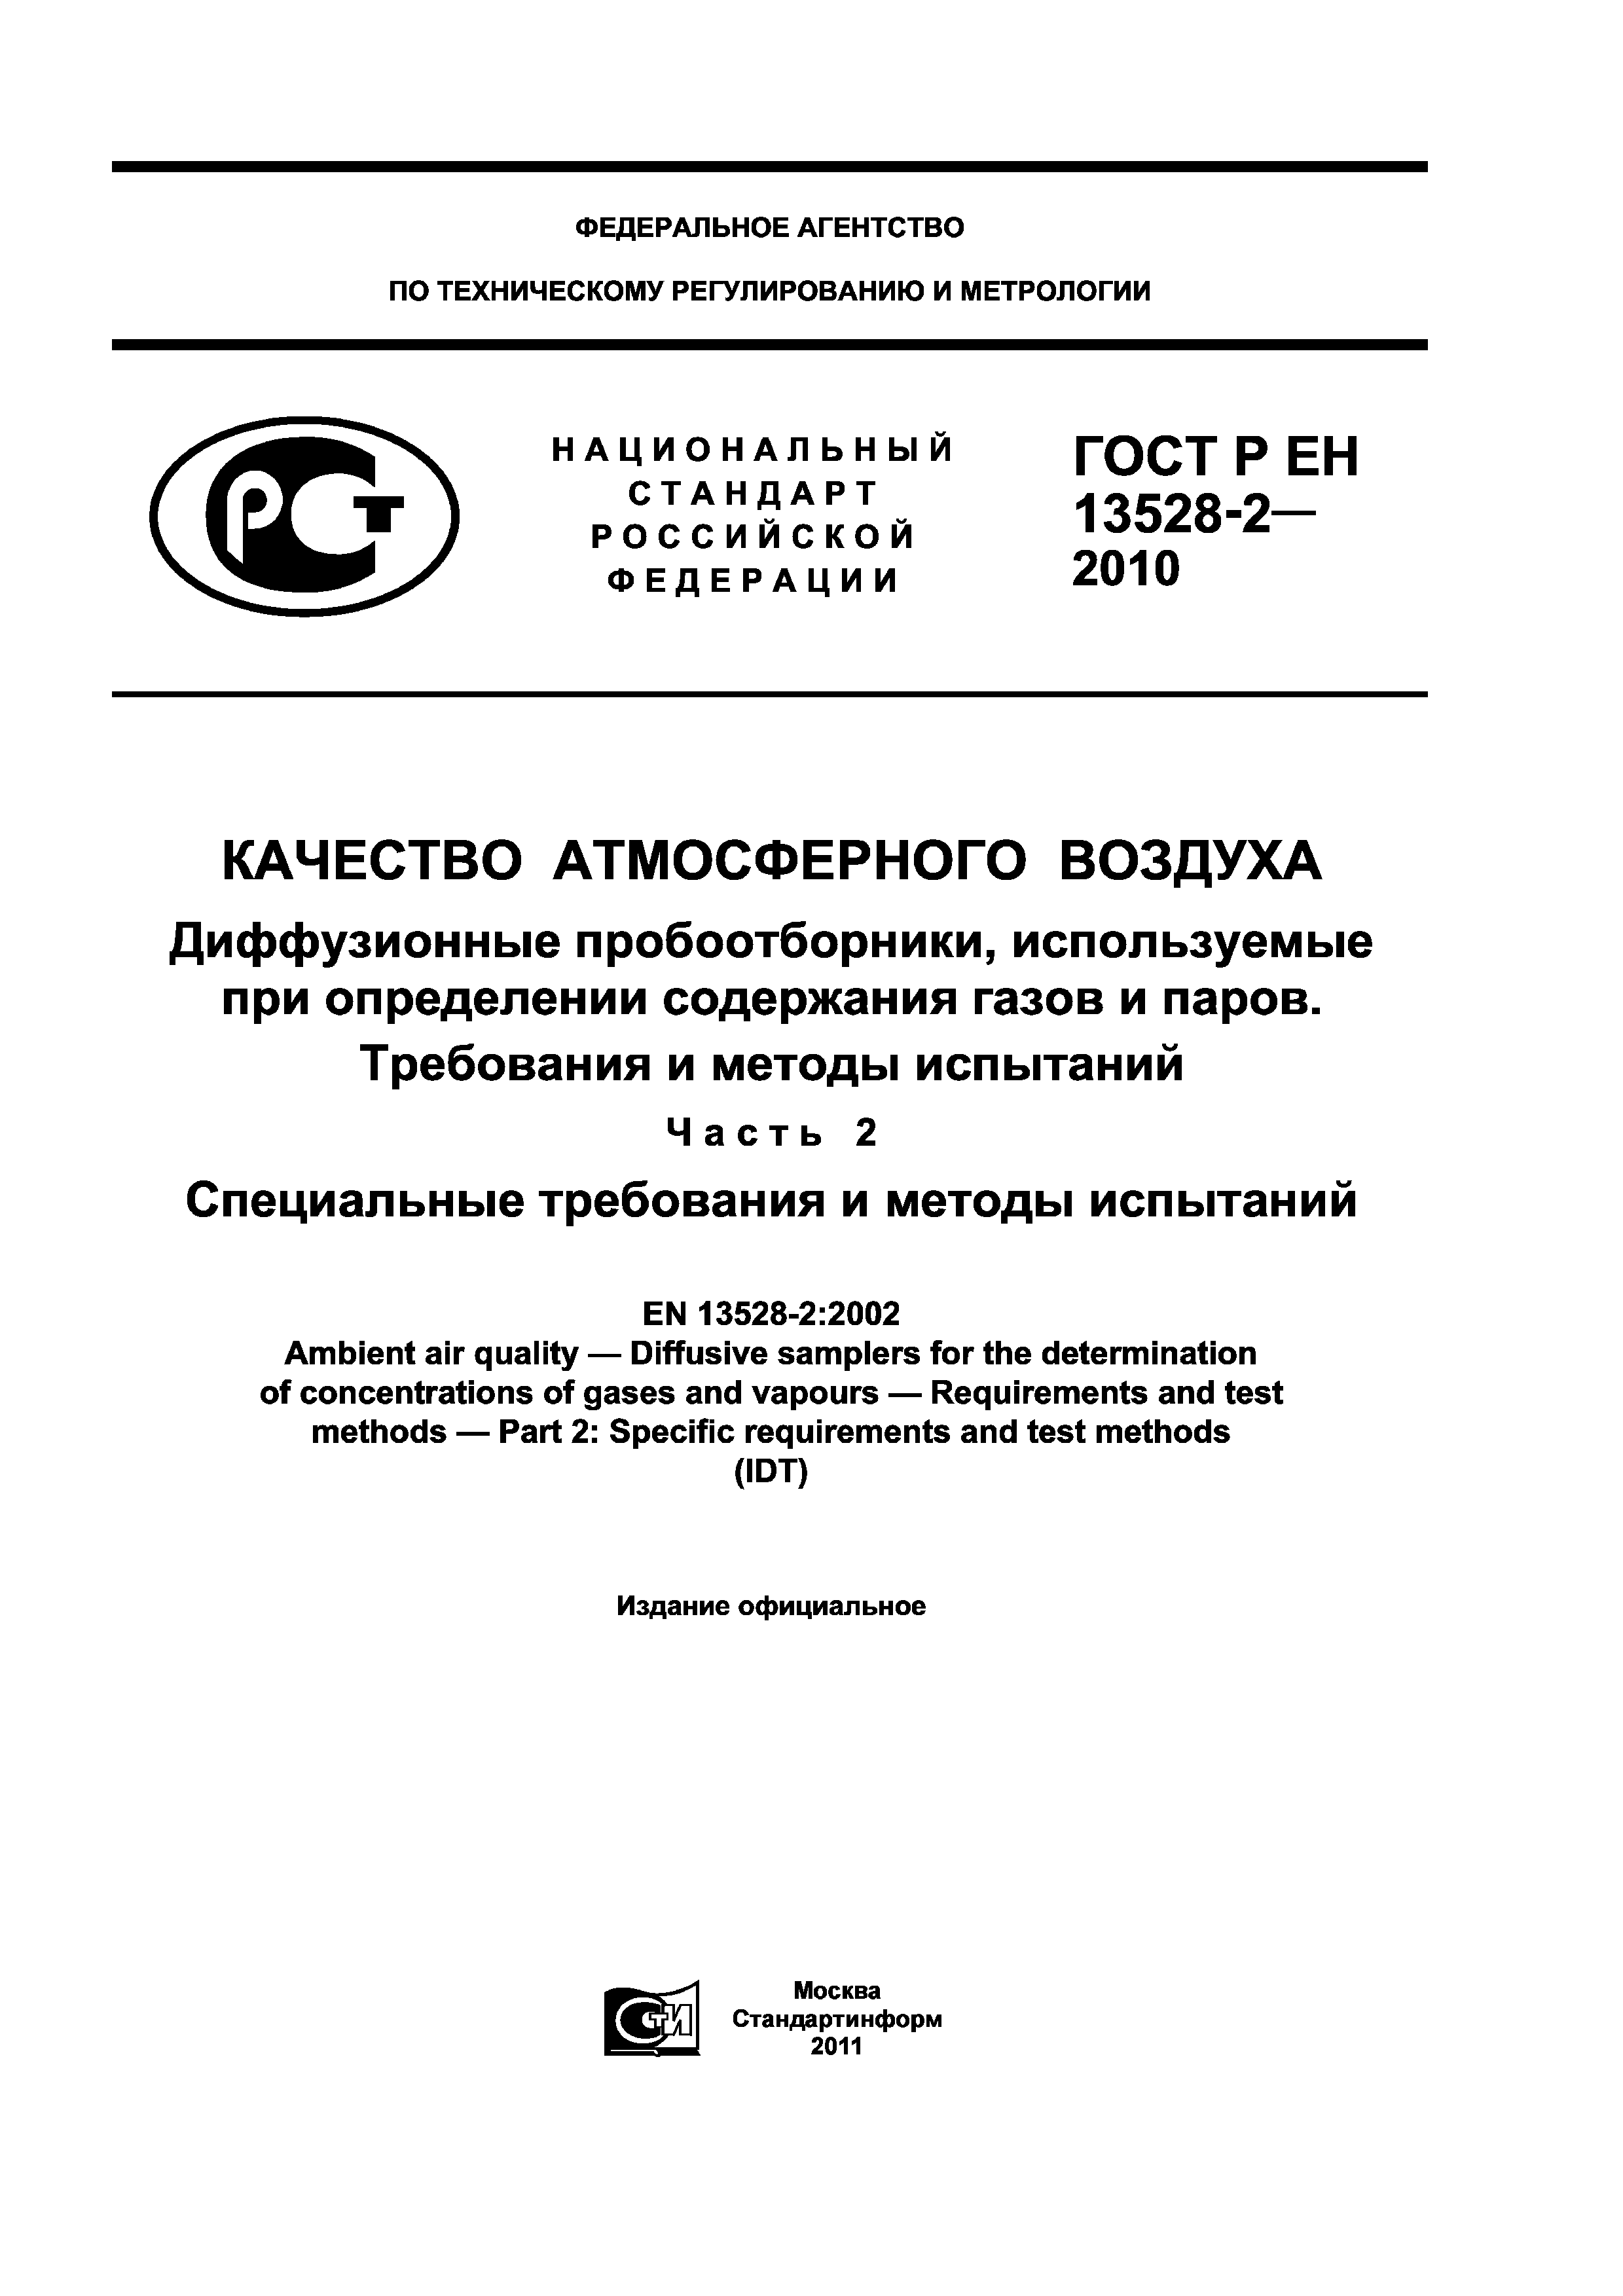 ГОСТ Р ЕН 13528-2-2010